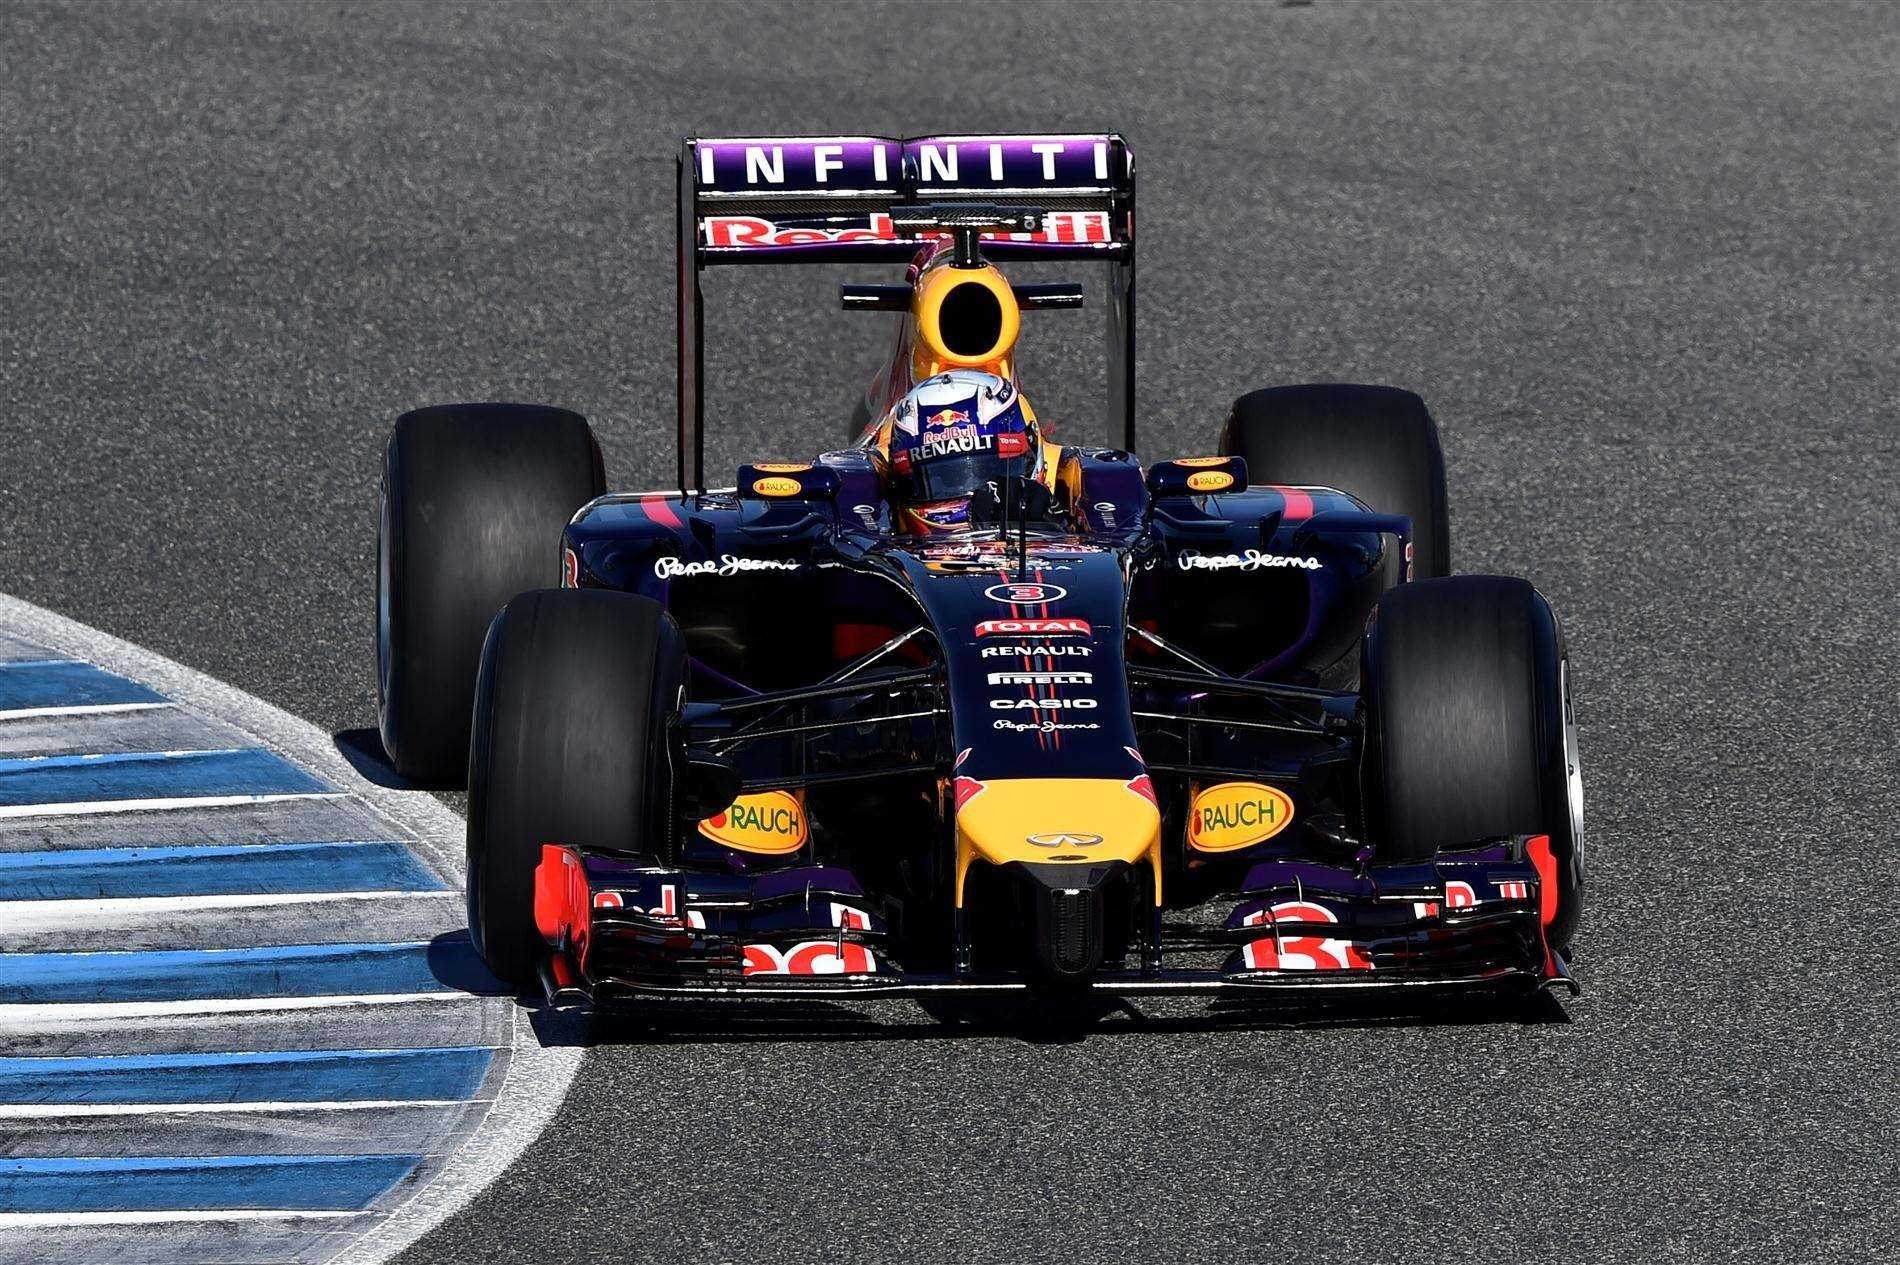 Red Bull Vive problemas sérios além dos problemas dos motores Renault